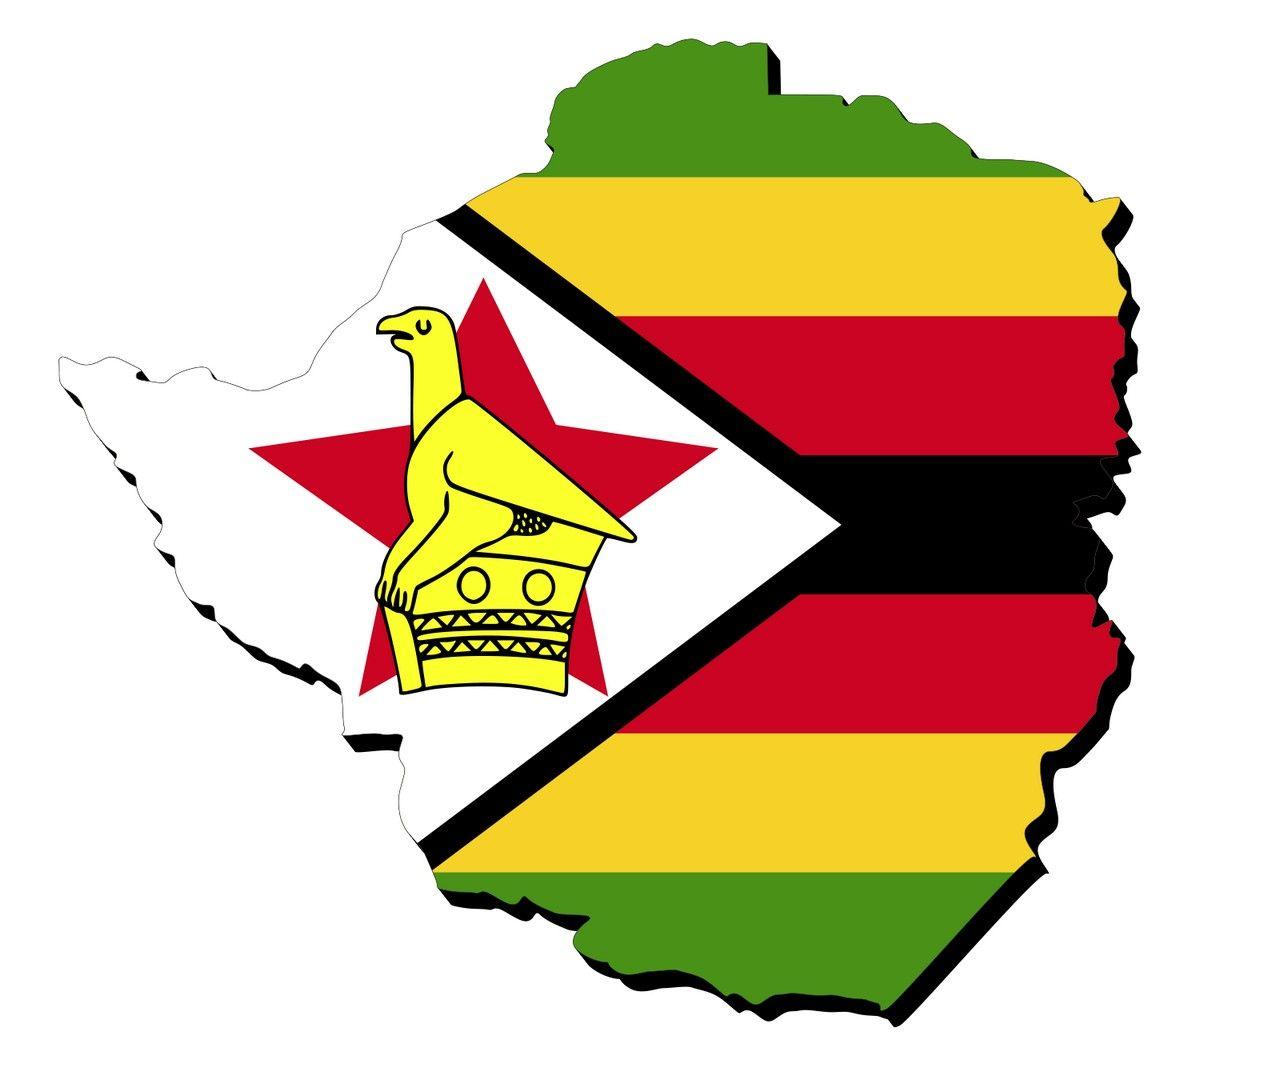 19 عدد تصویر زمینه پرچم زیمبابوه Zimbabwe Flag